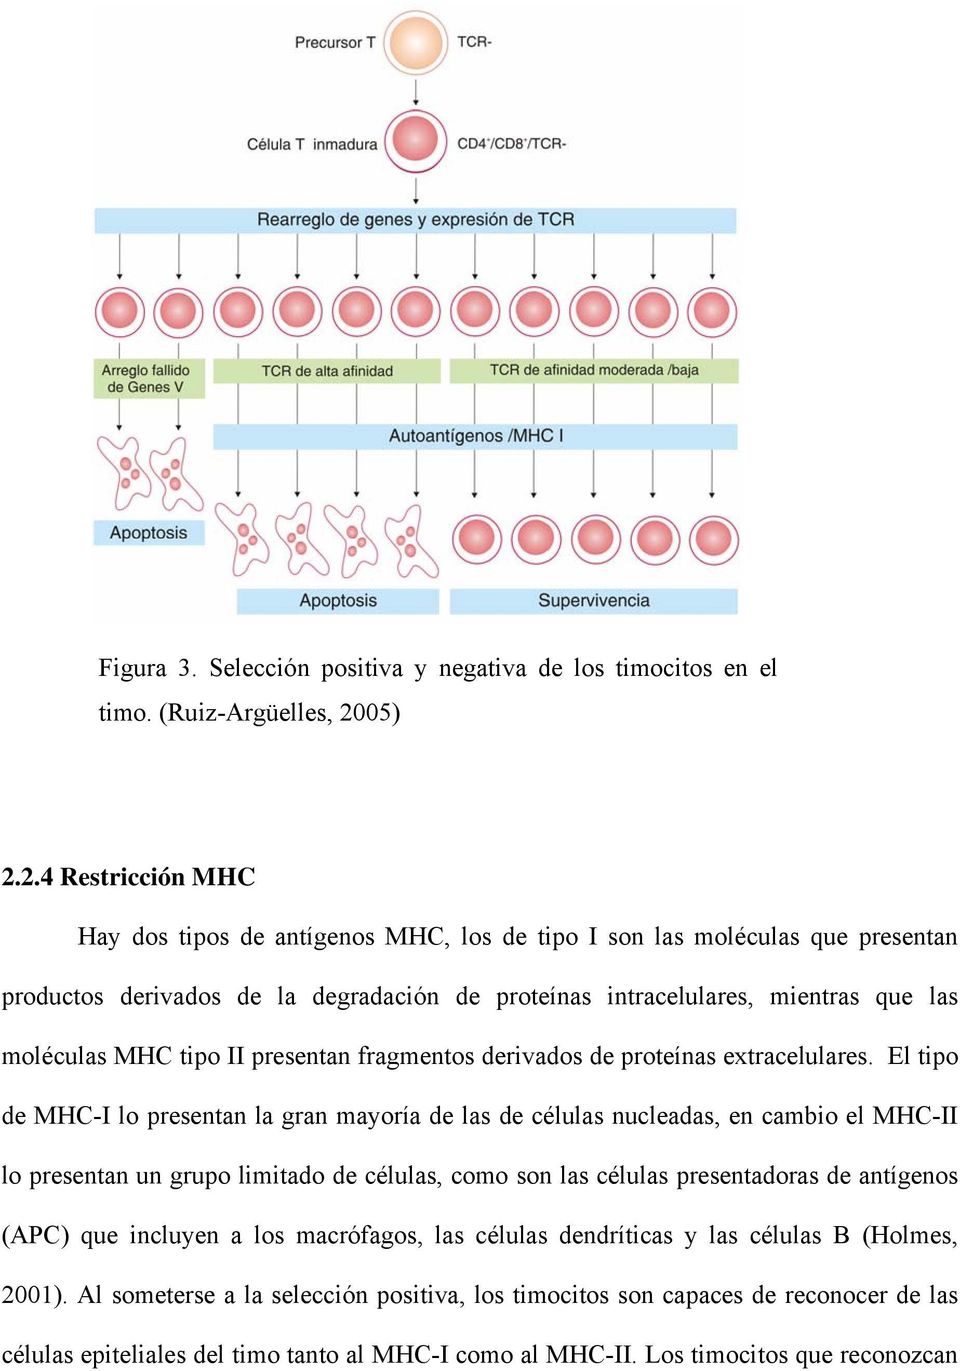 2.4 Restricción MHC Hay dos tipos de antígenos MHC, los de tipo I son las moléculas que presentan productos derivados de la degradación de proteínas intracelulares, mientras que las moléculas MHC